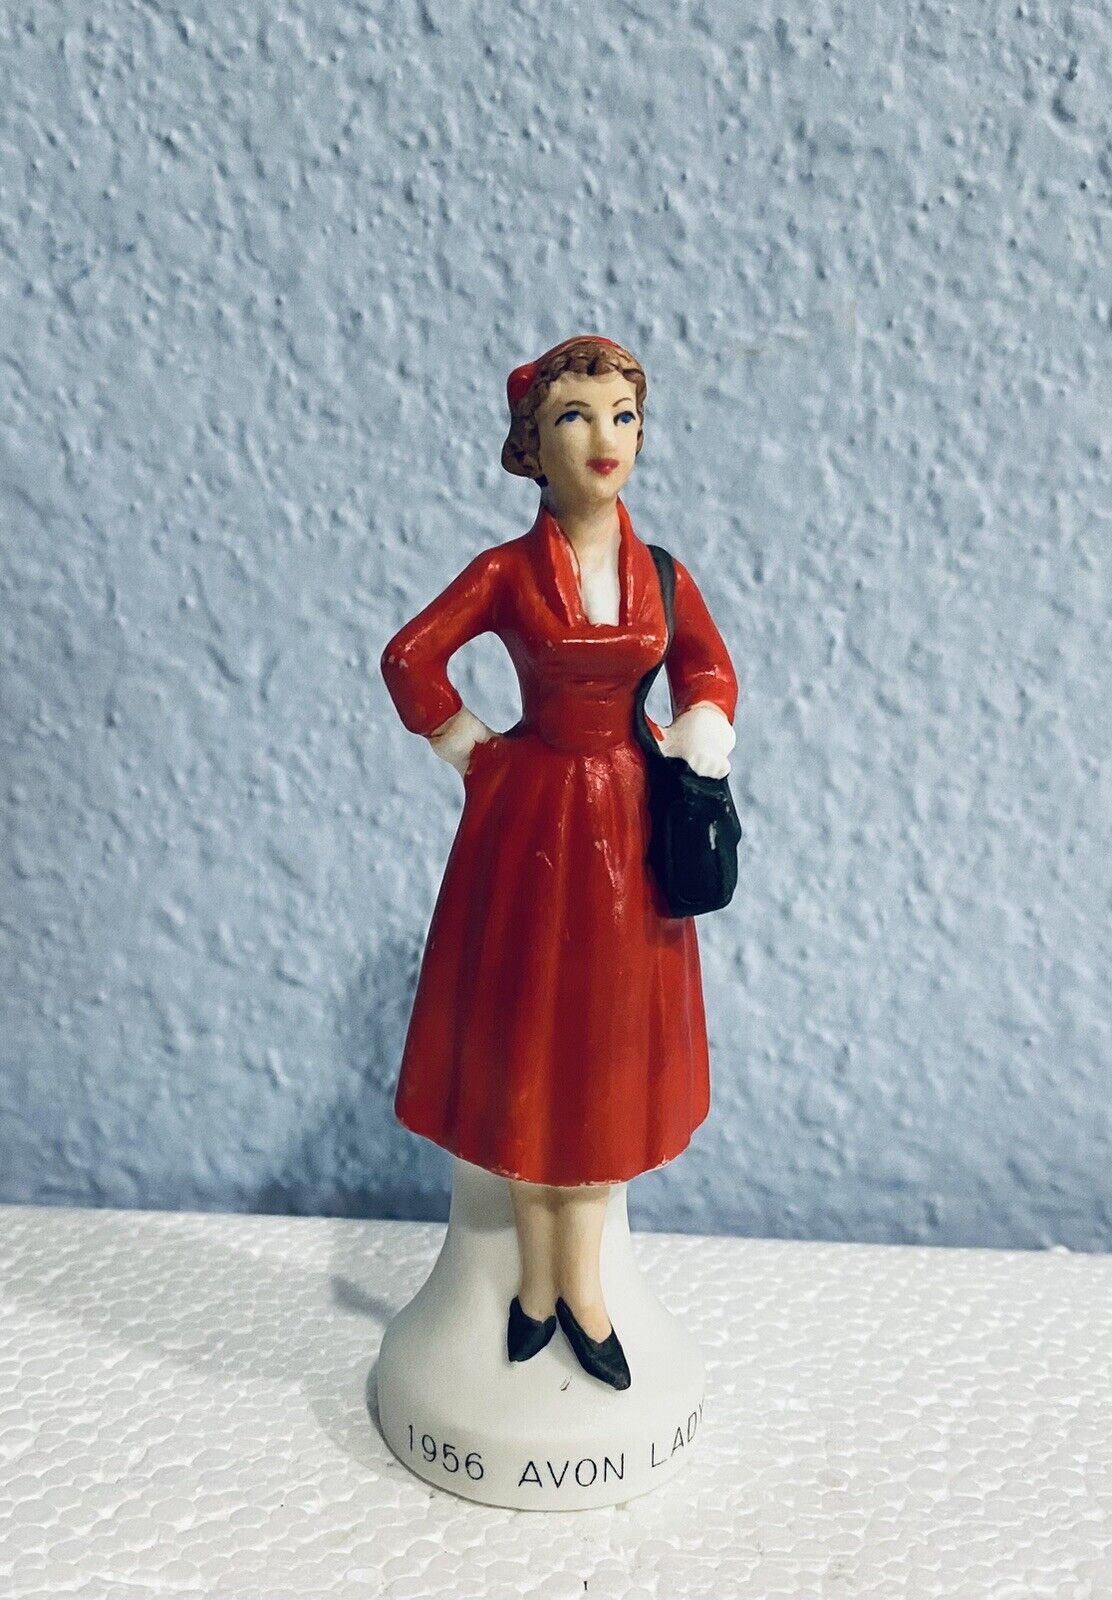 Vintage 1956 Avon Lady Figurine Japan